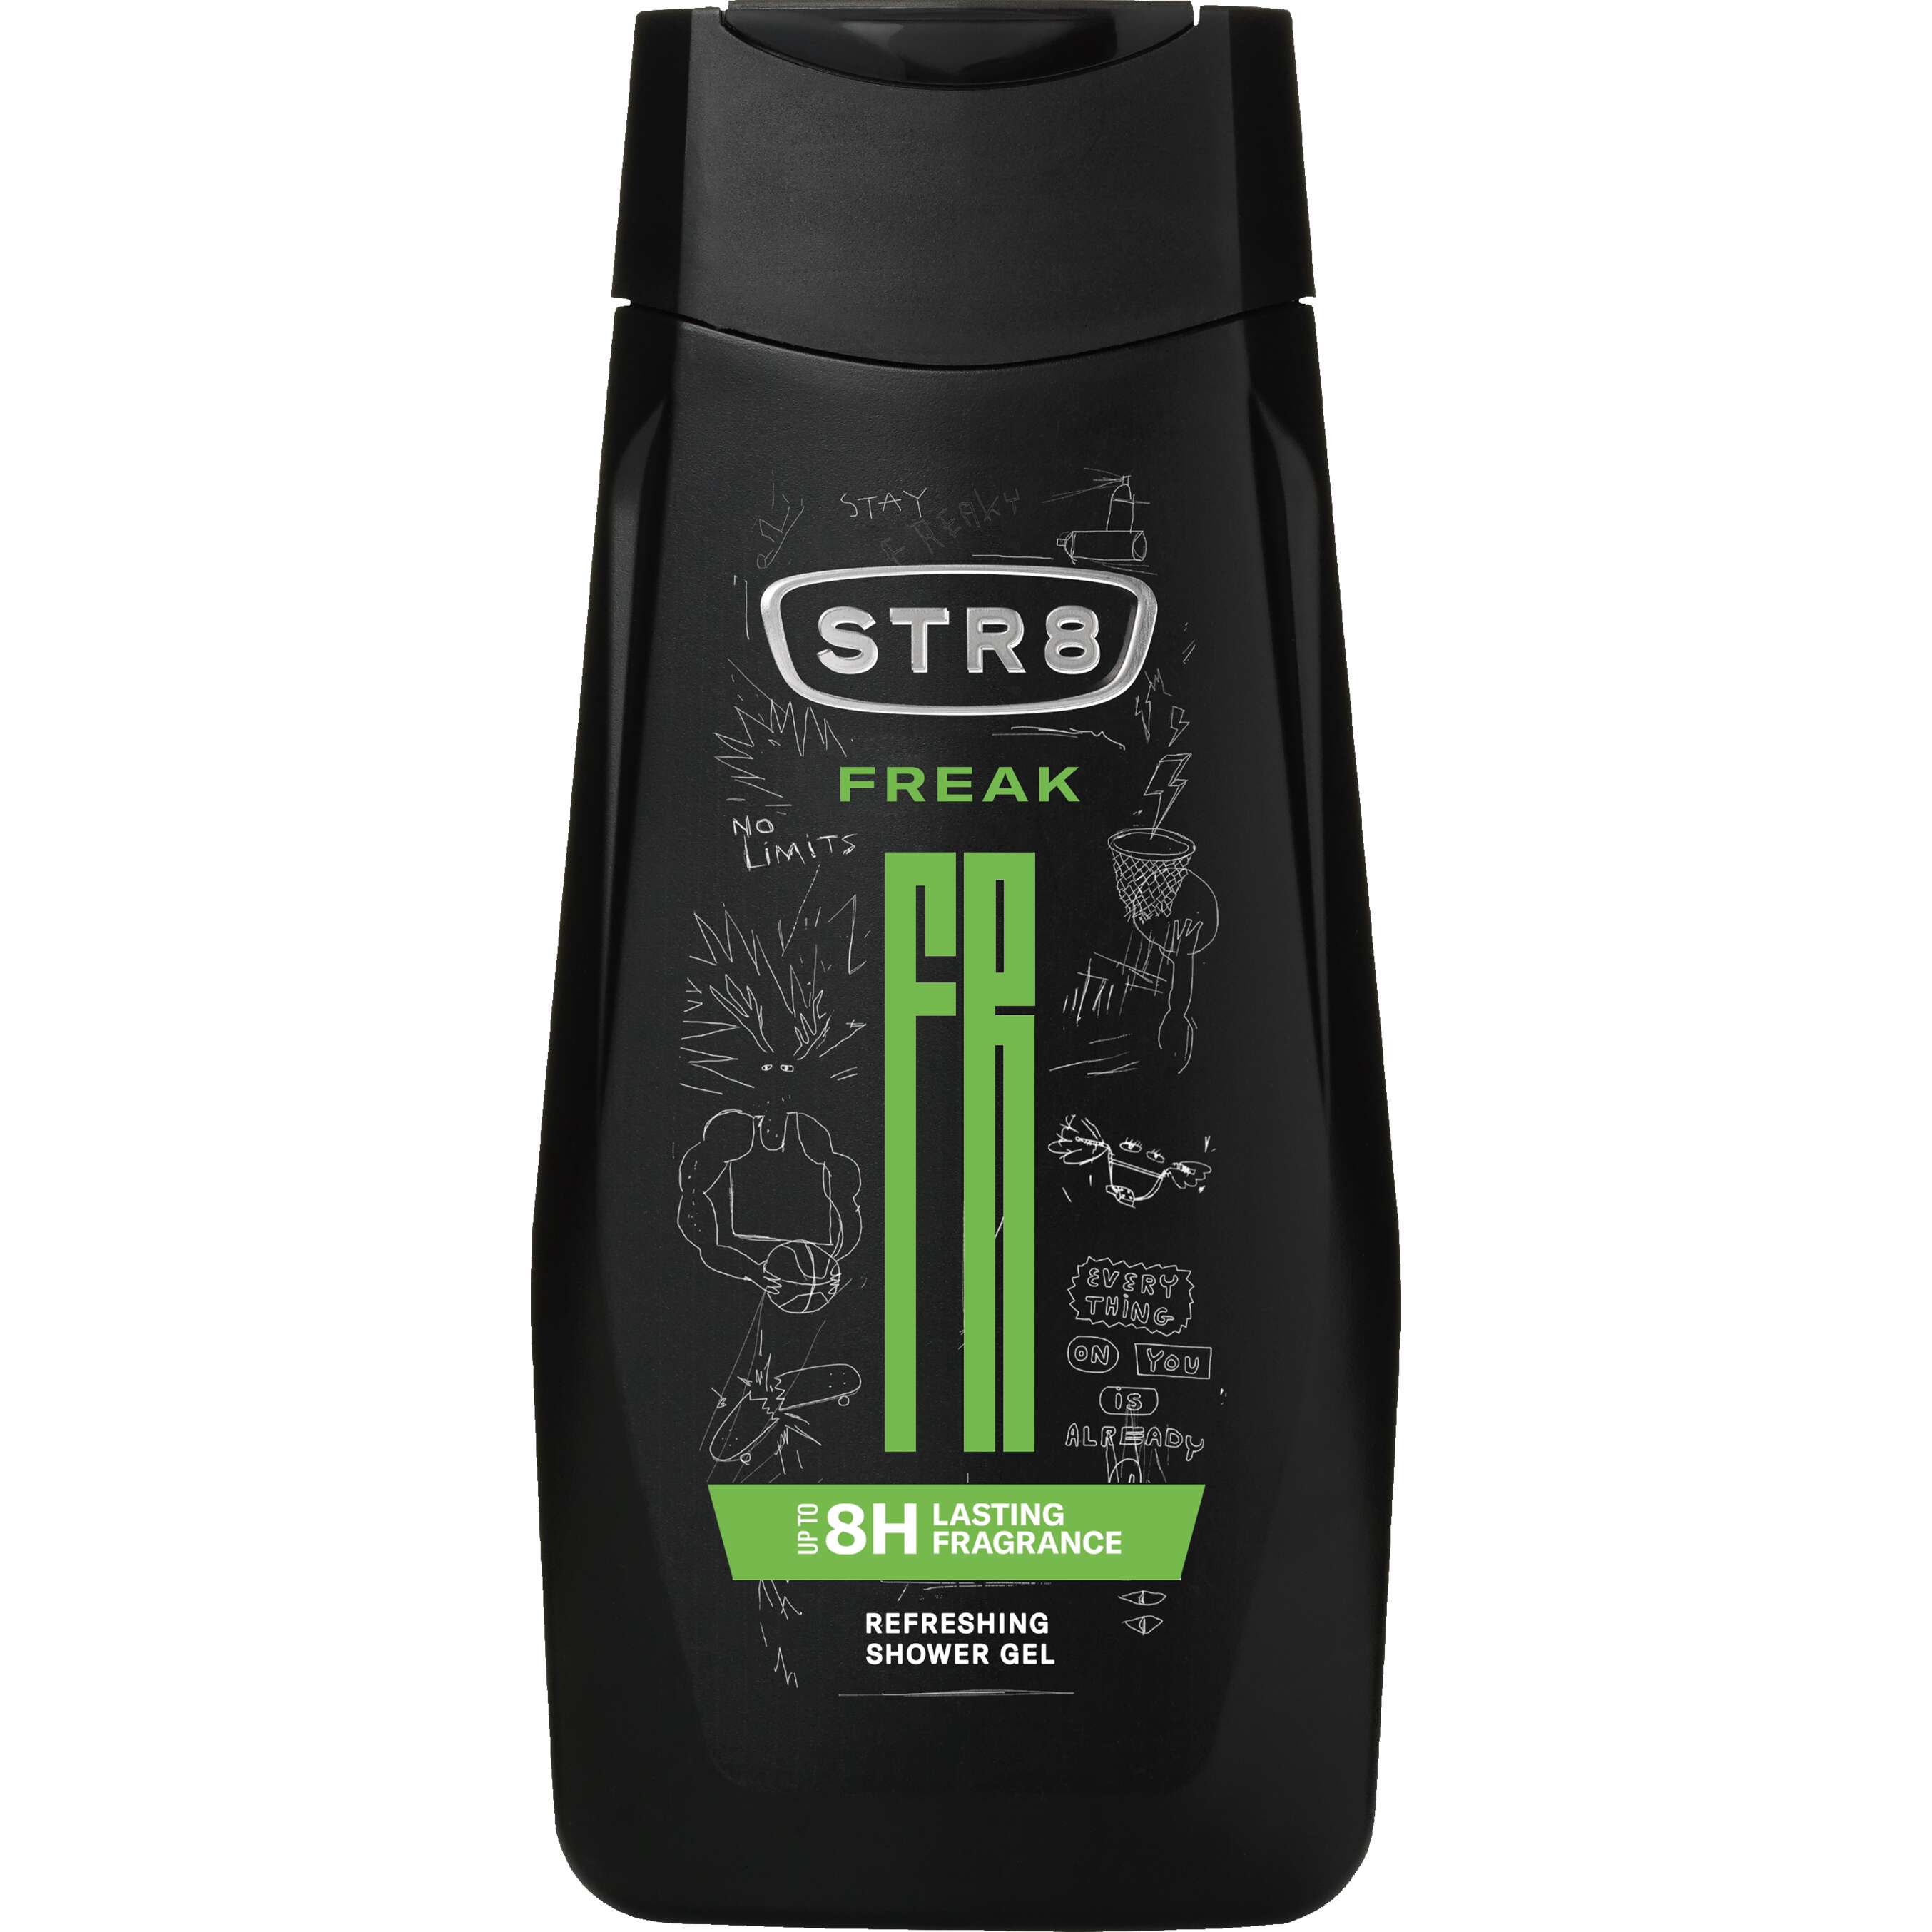 Zobrazit nabídku STR8 Sprchový gel